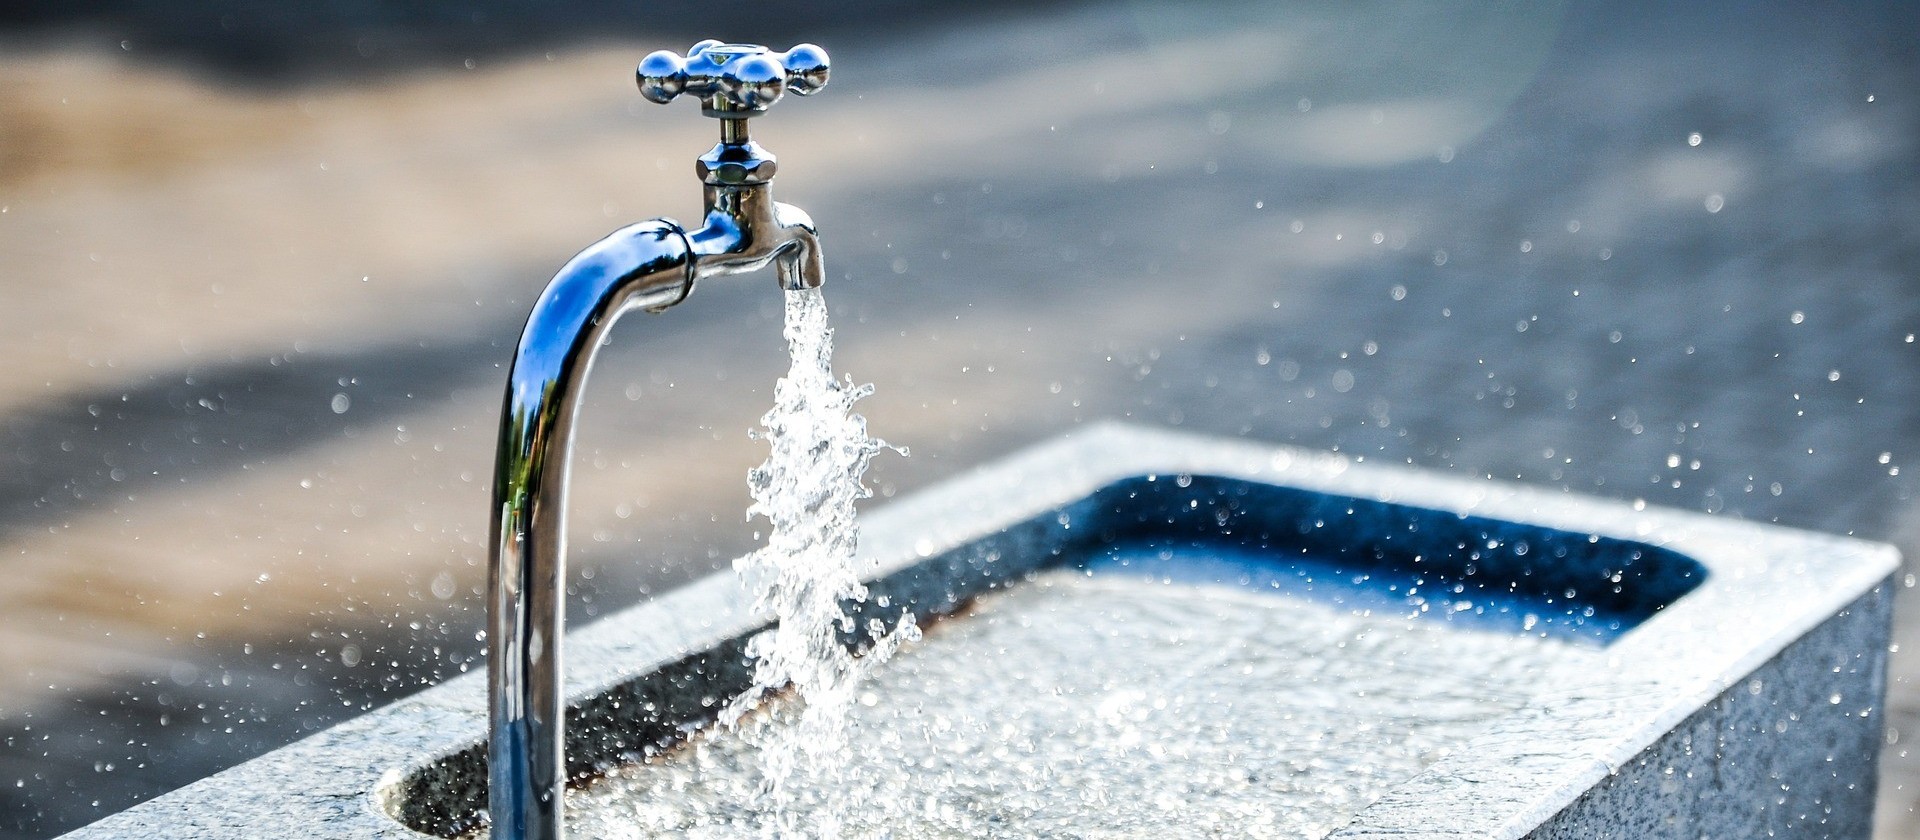 Saneamento: Lei obriga reaproveitamento de água de chuva e esgoto 